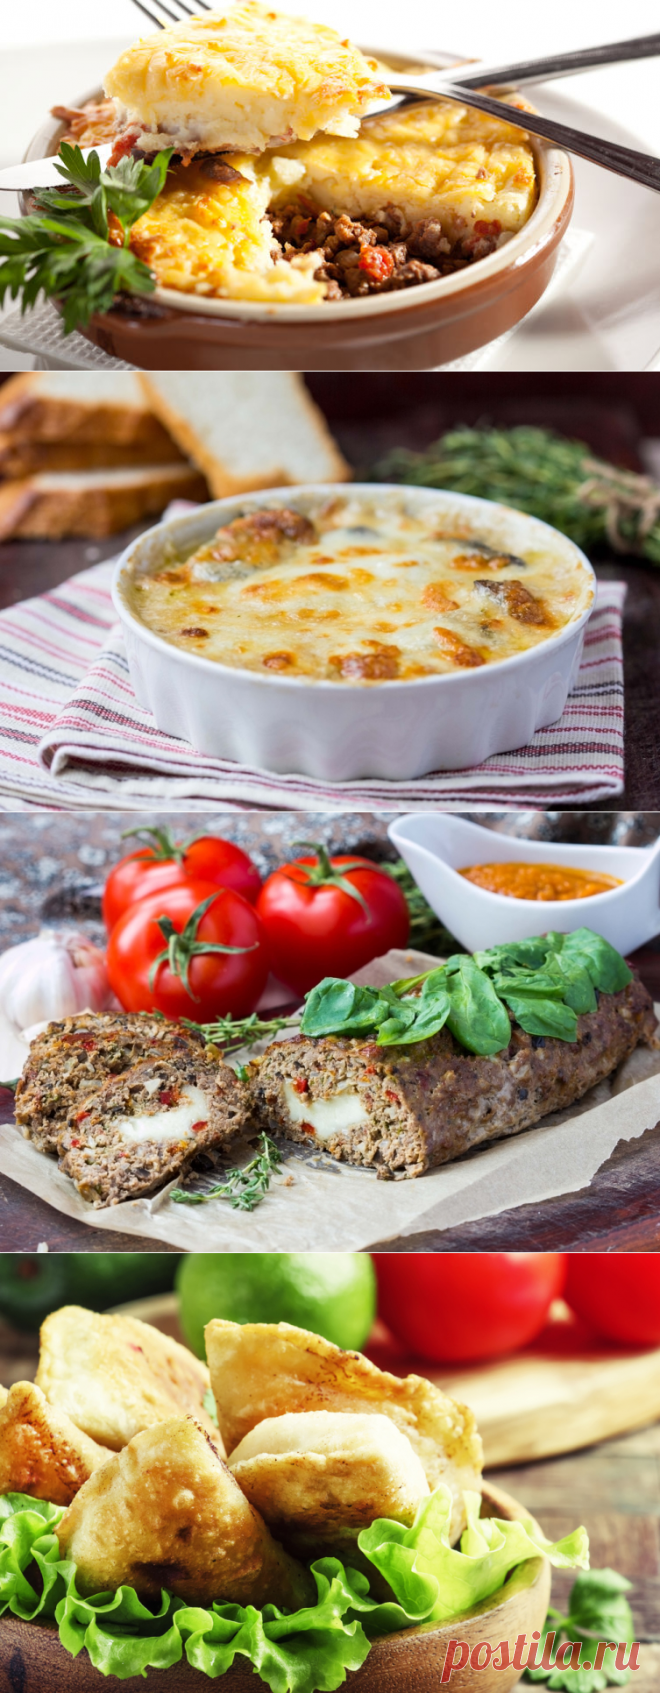 Что приготовить из мяса и картошки? | Еда и кулинария